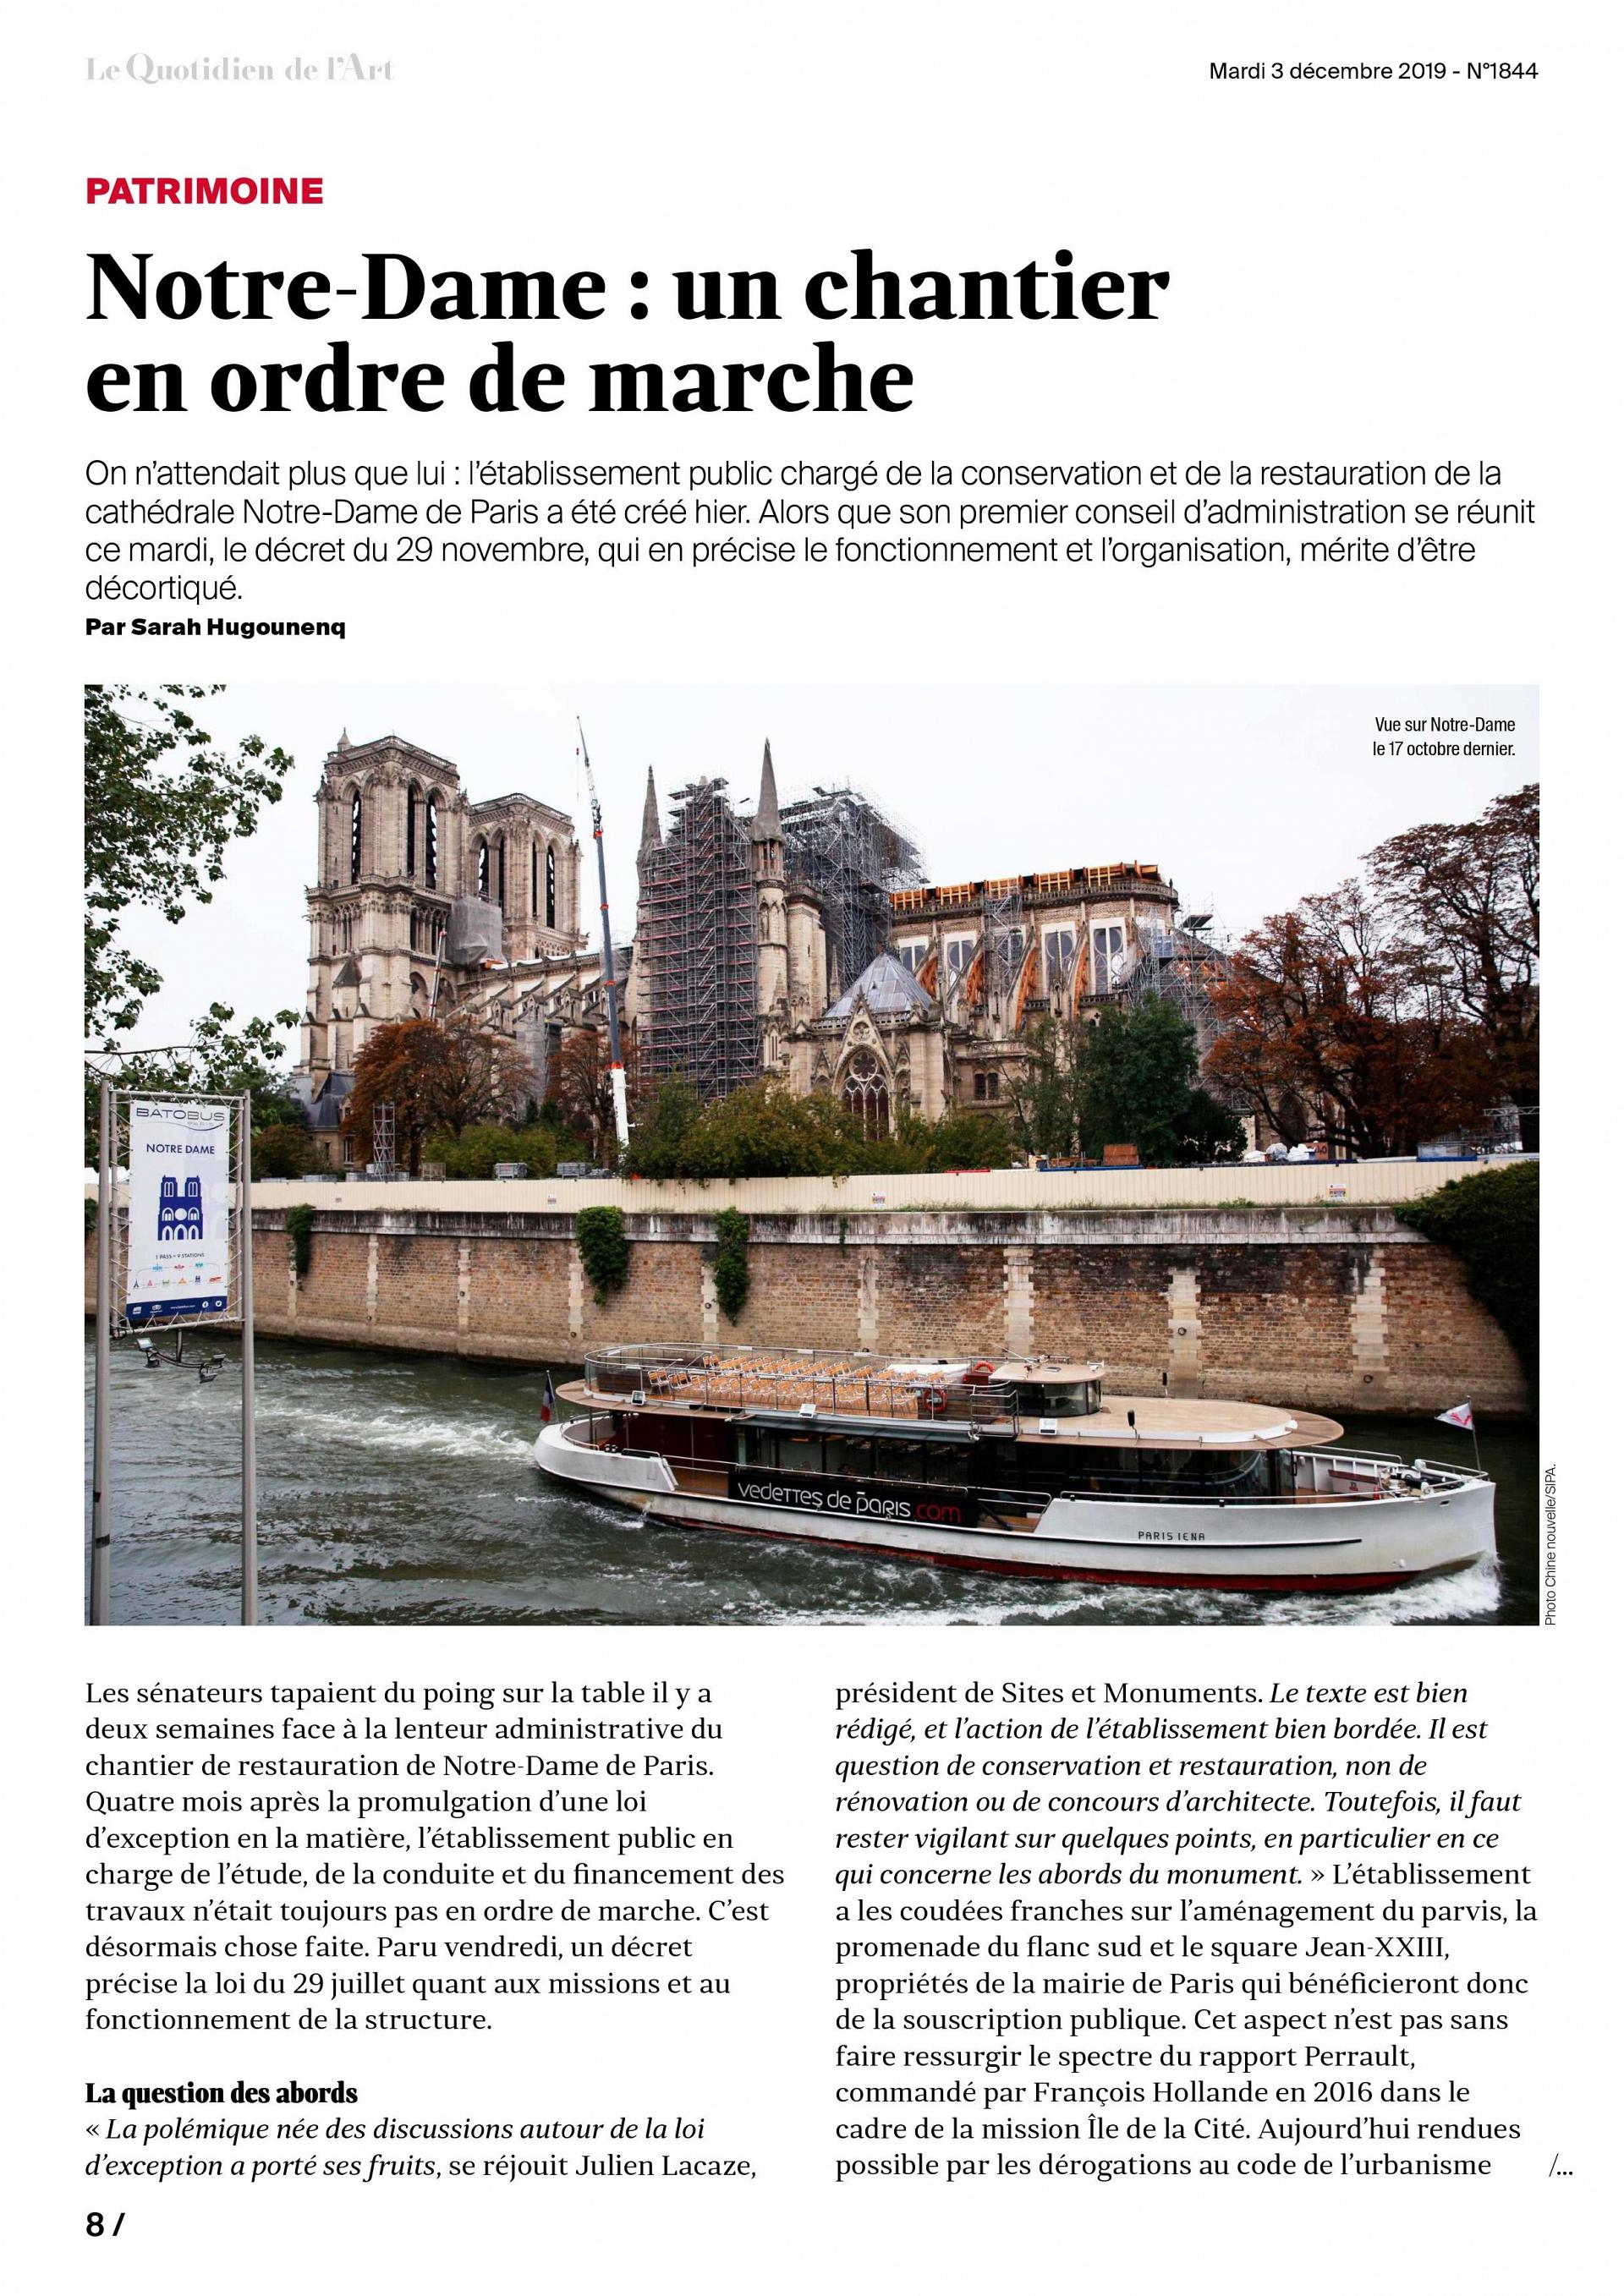 Le Quotidien de l'Art du 3 décembre 2019, décret Notre-Dame (1)